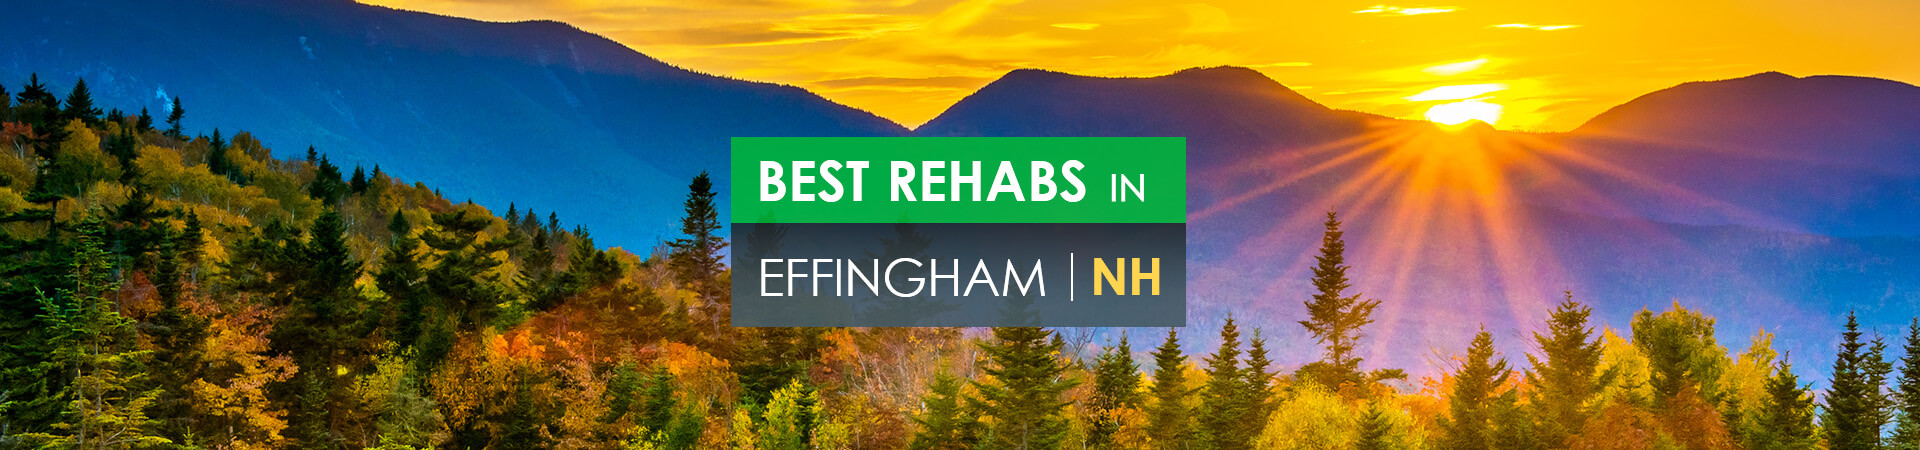 Best rehabs in Effingham, NH